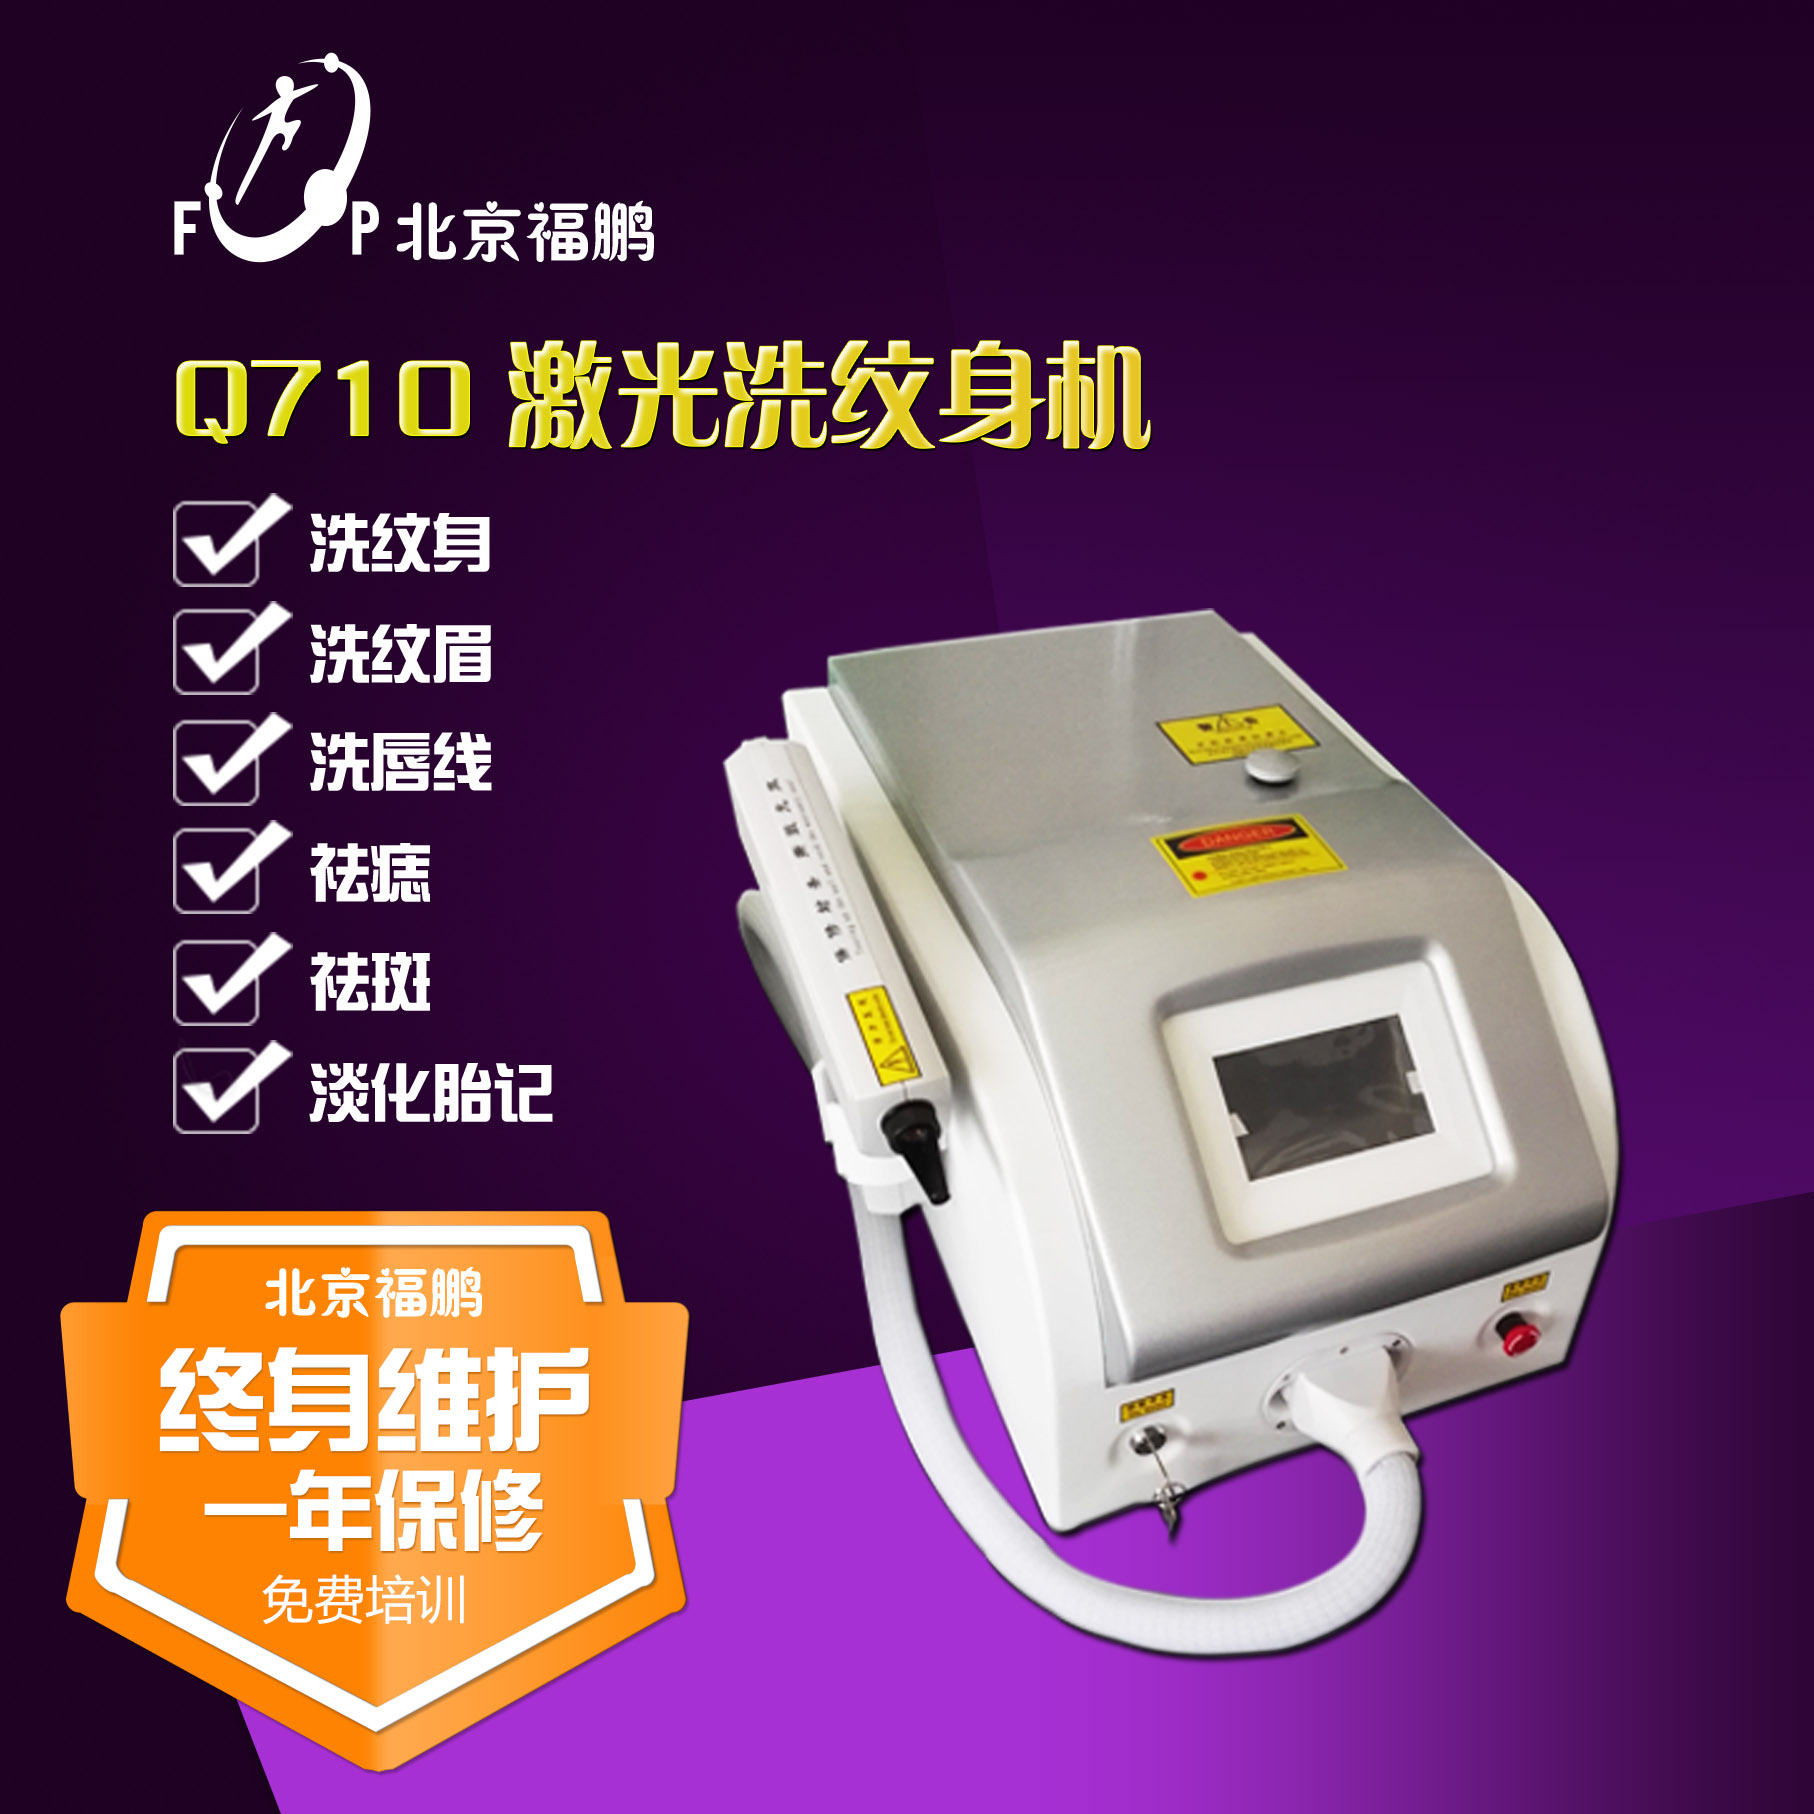 北京福鹏新款Q710大功率激光洗纹身机洗眉机进口洗纹身机图片